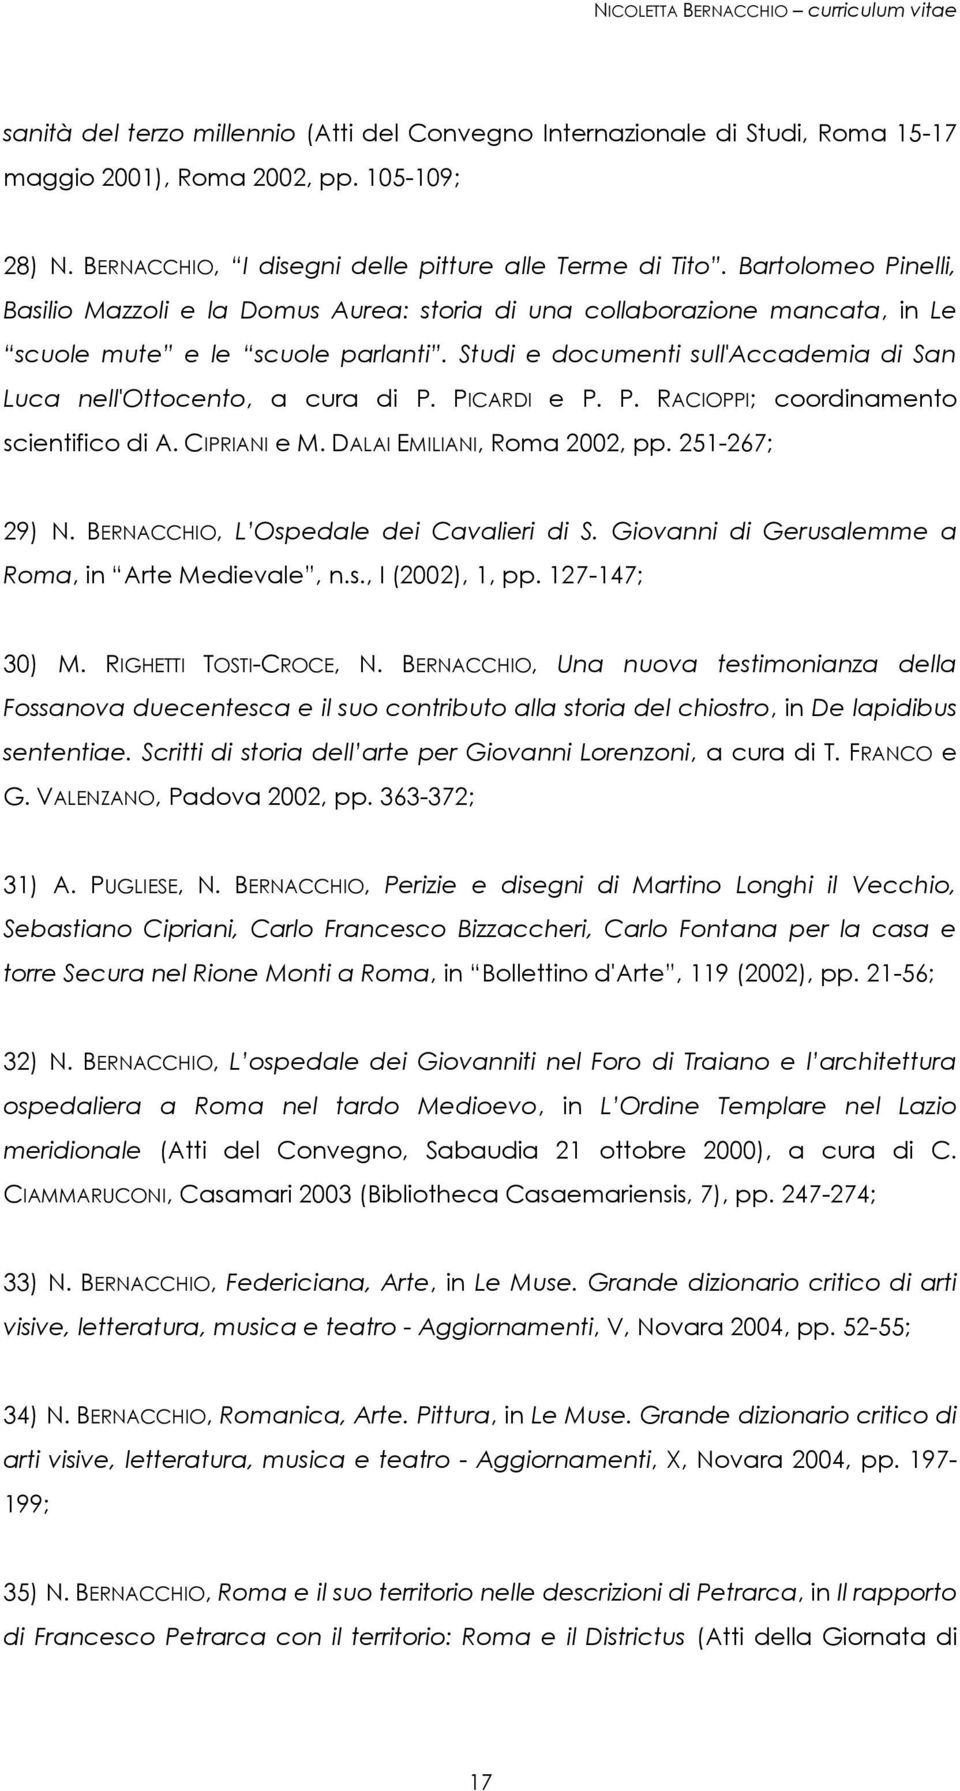 Studi e documenti sull'accademia di San Luca nell'ottocento, a cura di P. PICARDI e P. P. RACIOPPI; coordinamento scientifico di A. CIPRIANI e M. DALAI EMILIANI, Roma 2002, pp. 251-267; 29) N.